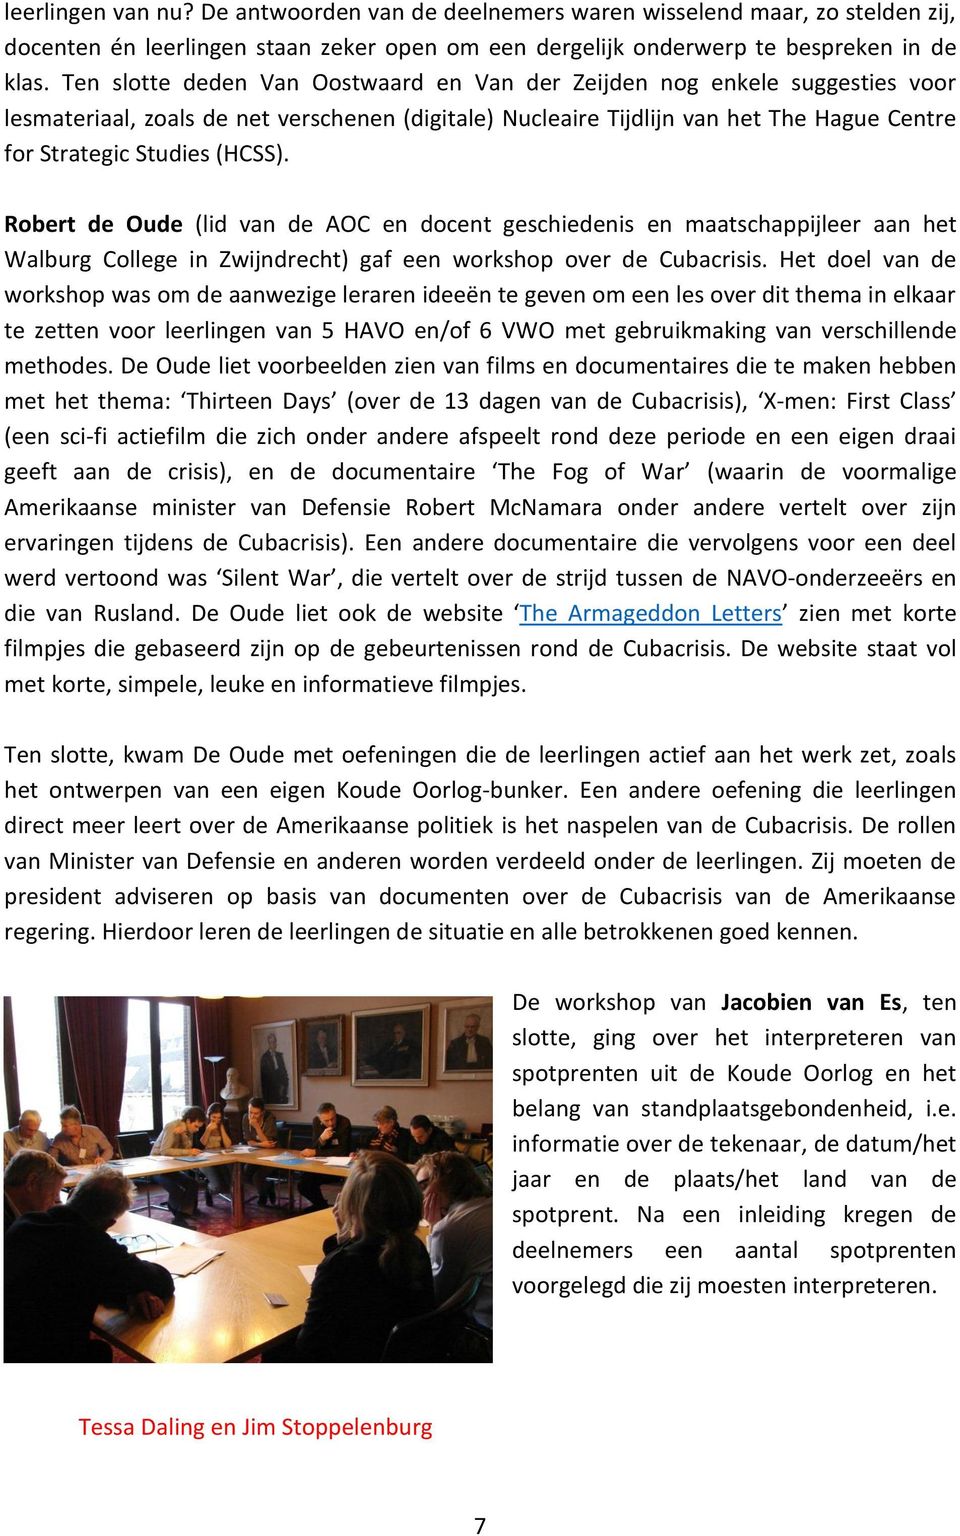 Robert de Oude (lid van de AOC en docent geschiedenis en maatschappijleer aan het Walburg College in Zwijndrecht) gaf een workshop over de Cubacrisis.